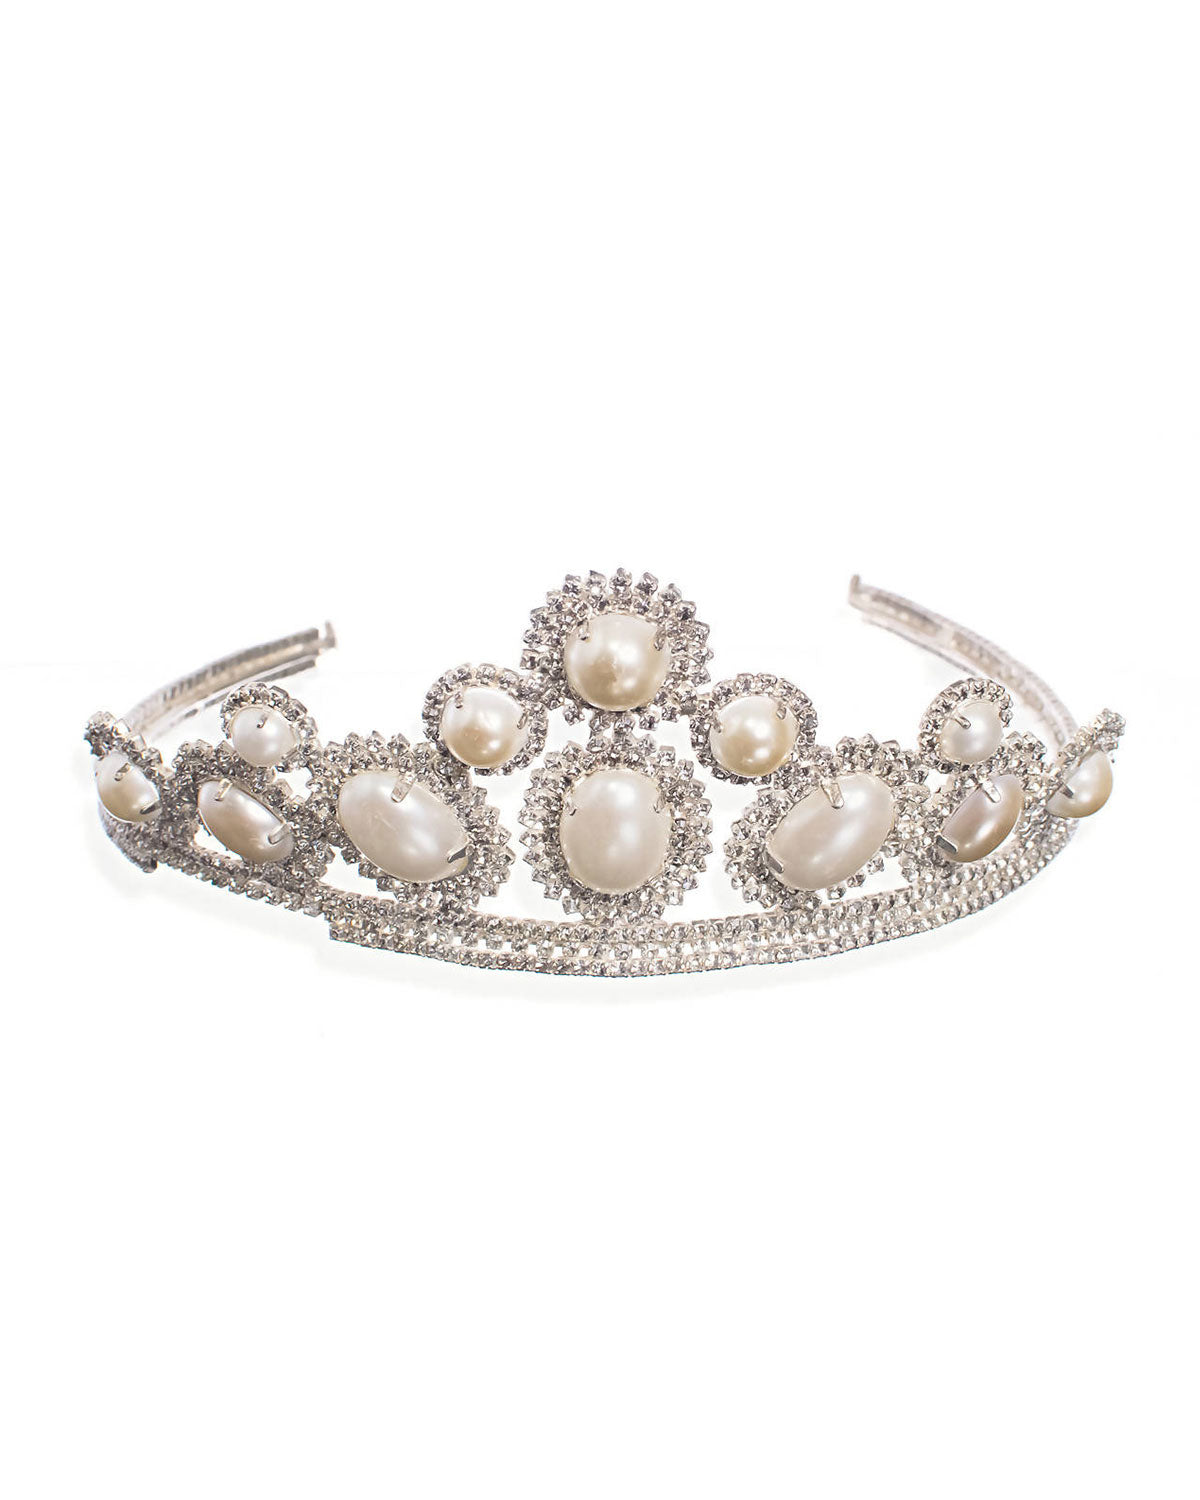 Coroa de noiva com pérola - Diana